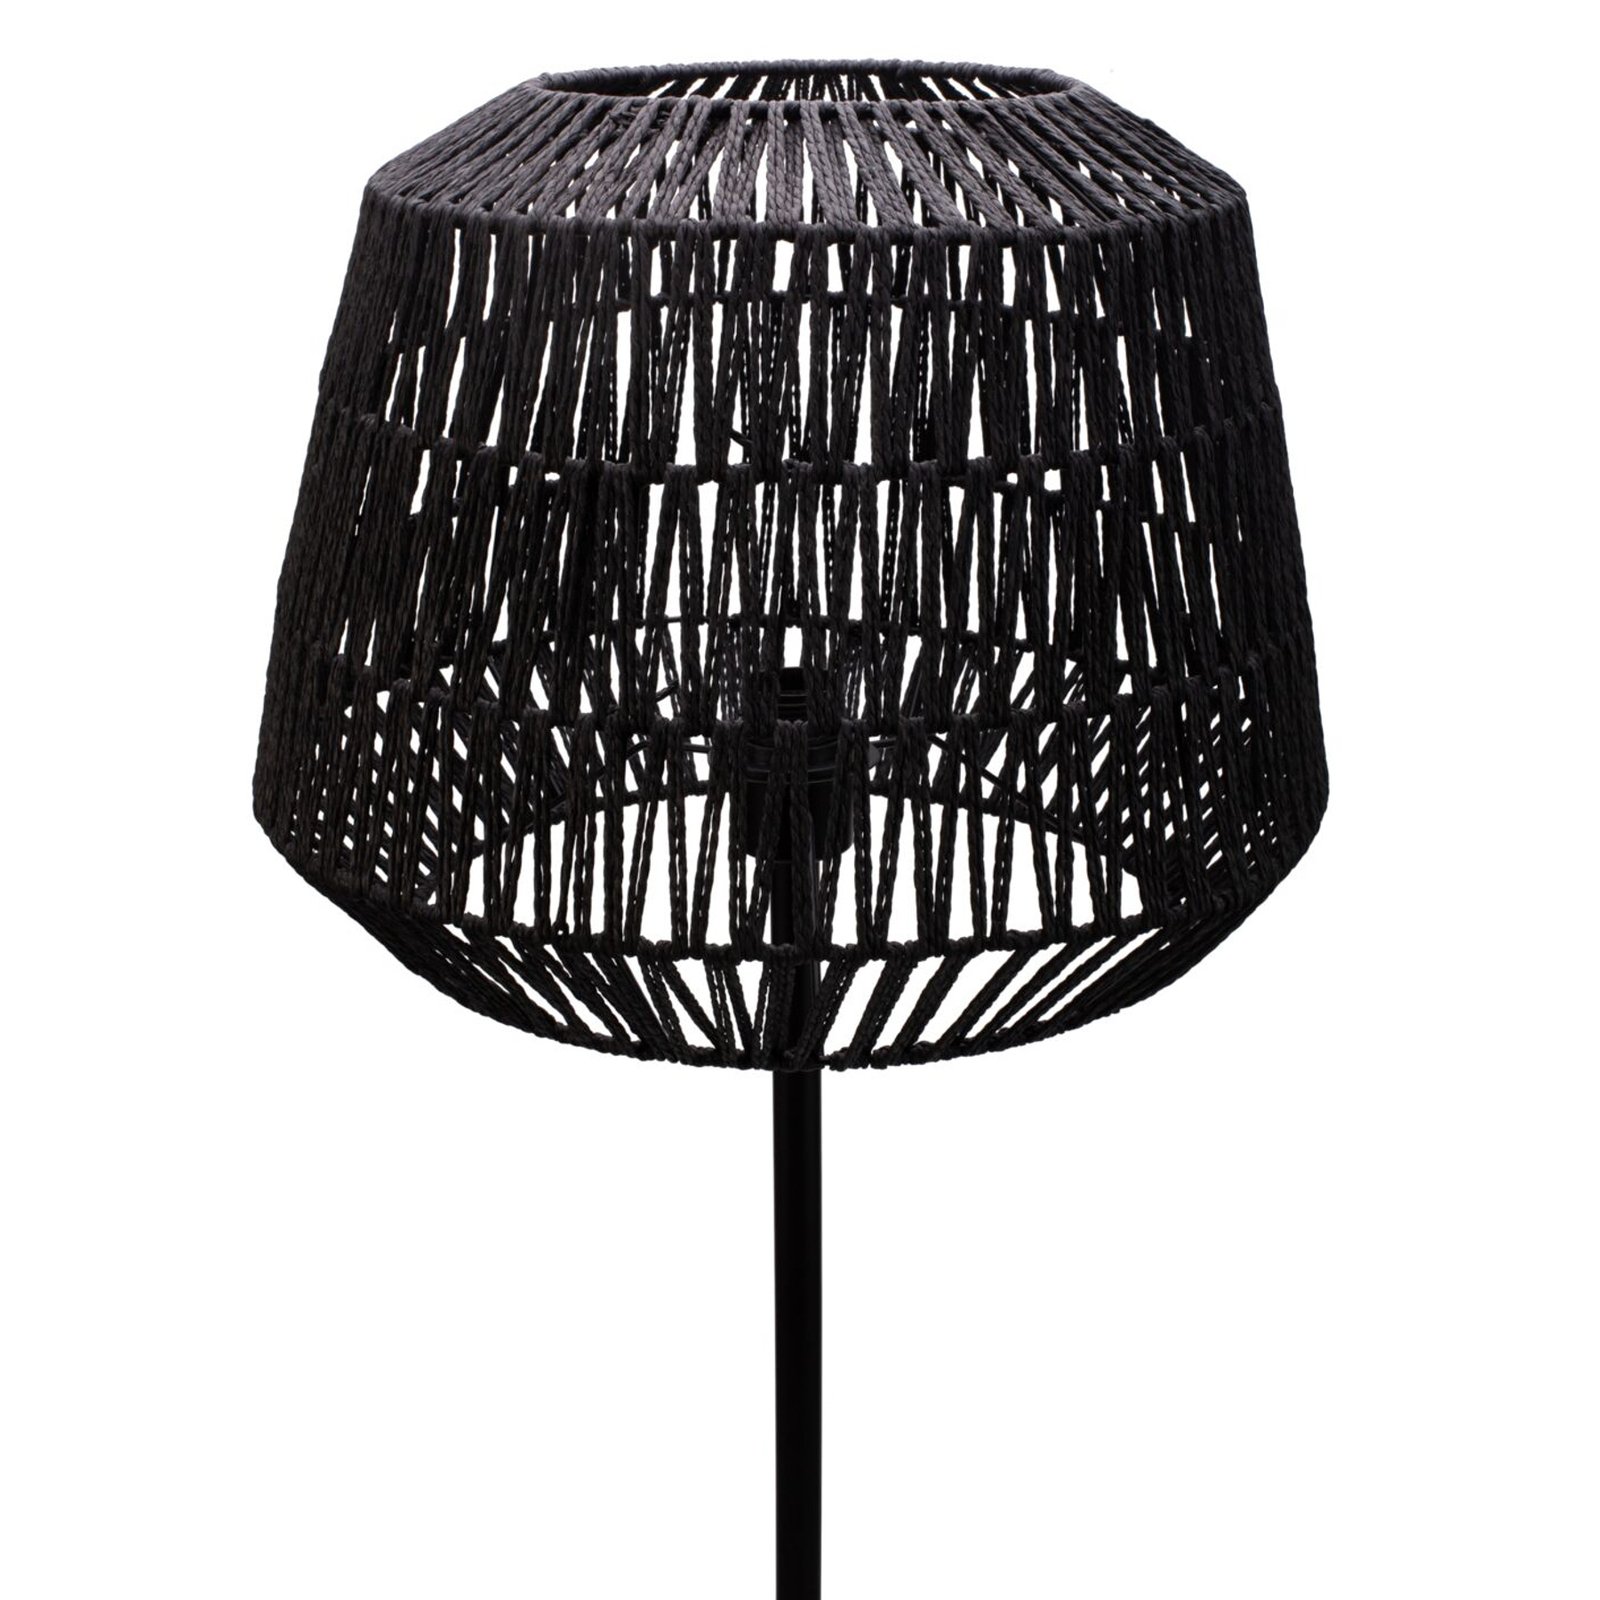 Pauleen Timber Pearl floor lamp, mesh lampshade